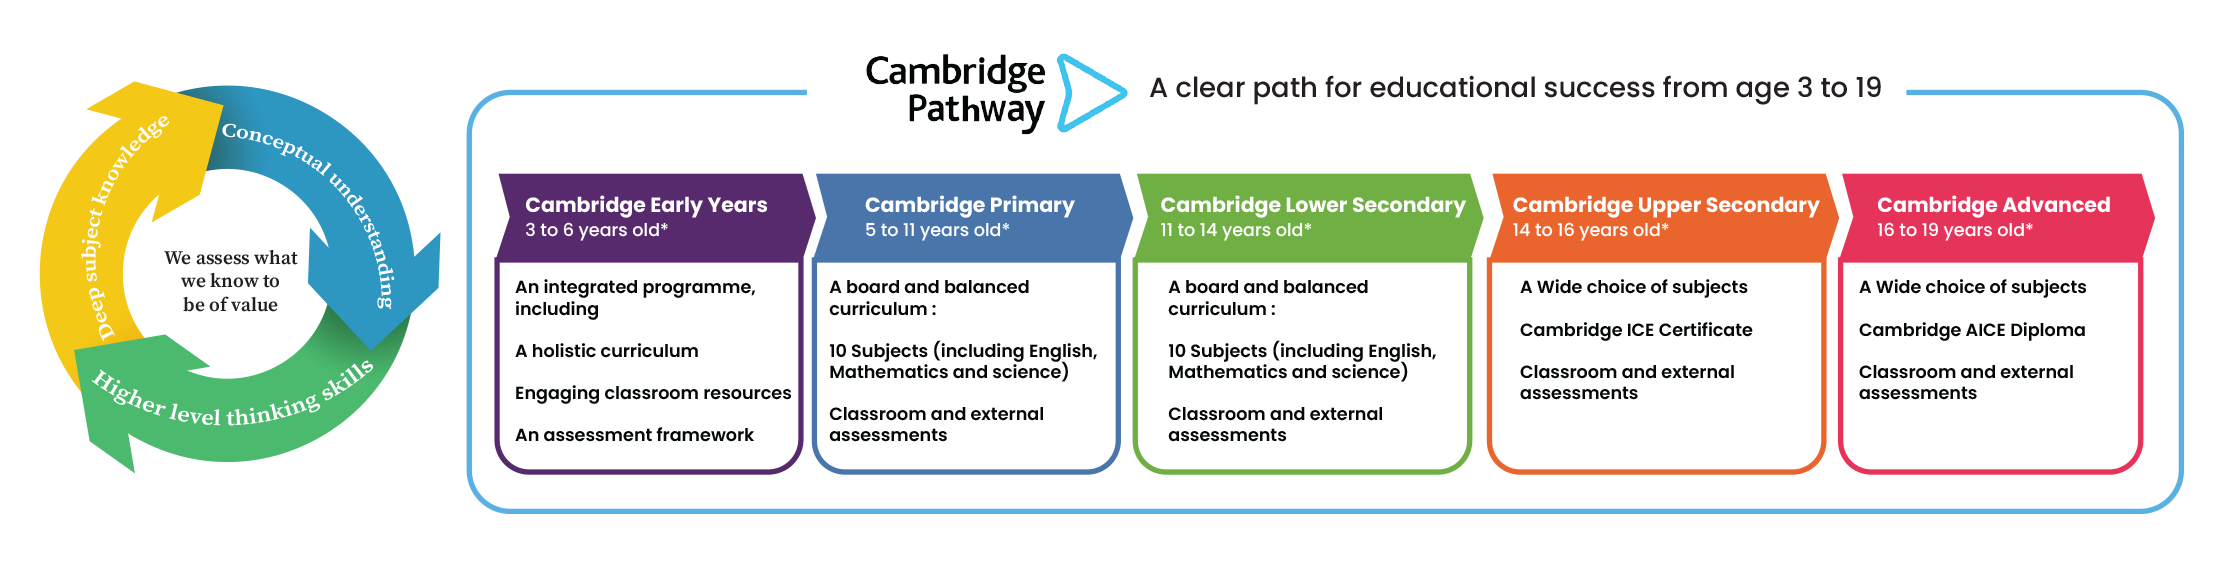 Cambridge pathway